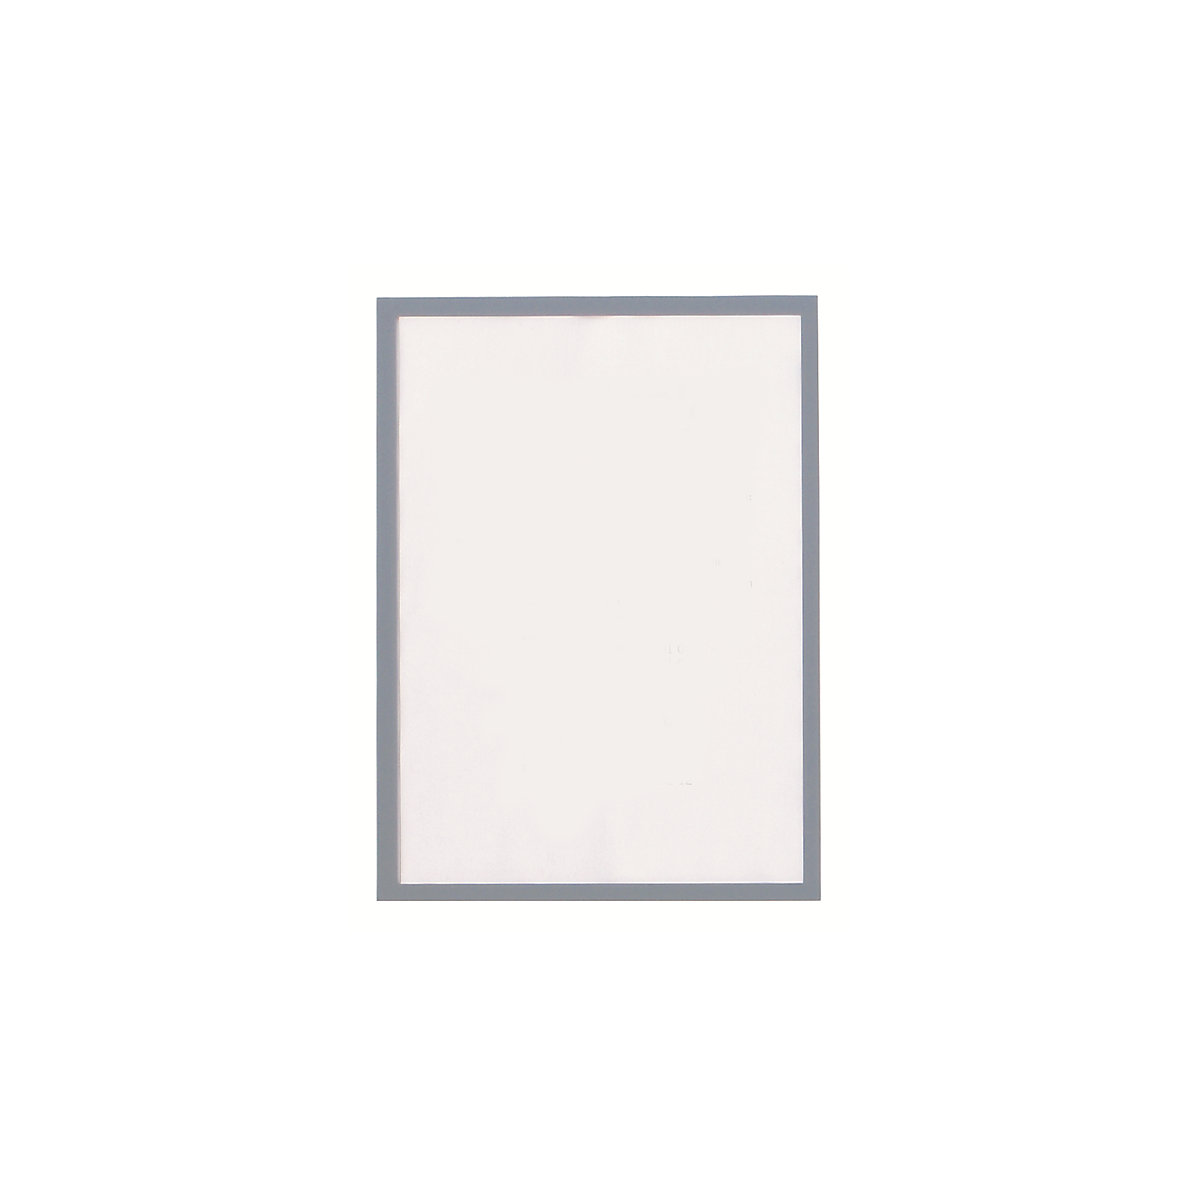 magnetofix vision panel – magnetoplan, format A3, pack of 5, grey frame-4